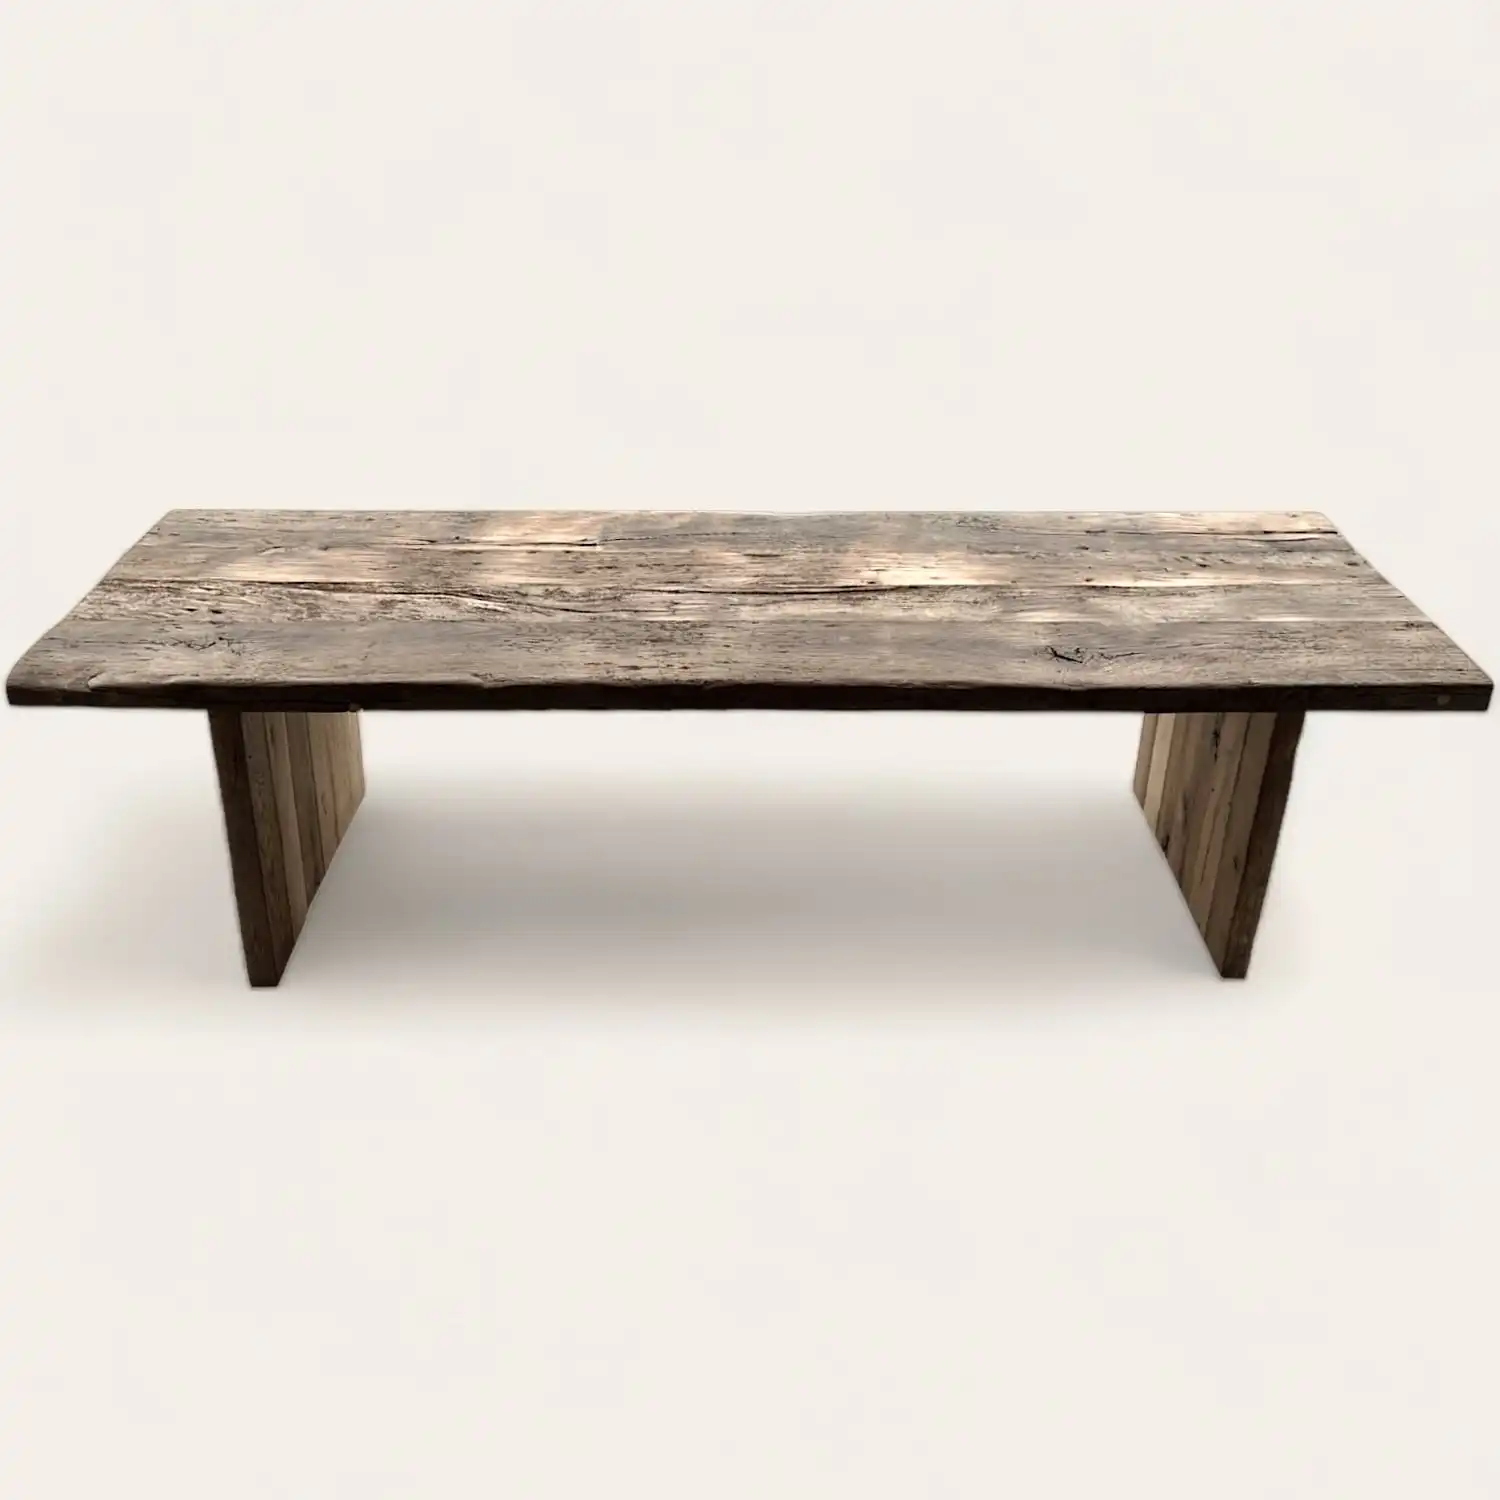  Une table basse en bois récupéré. 